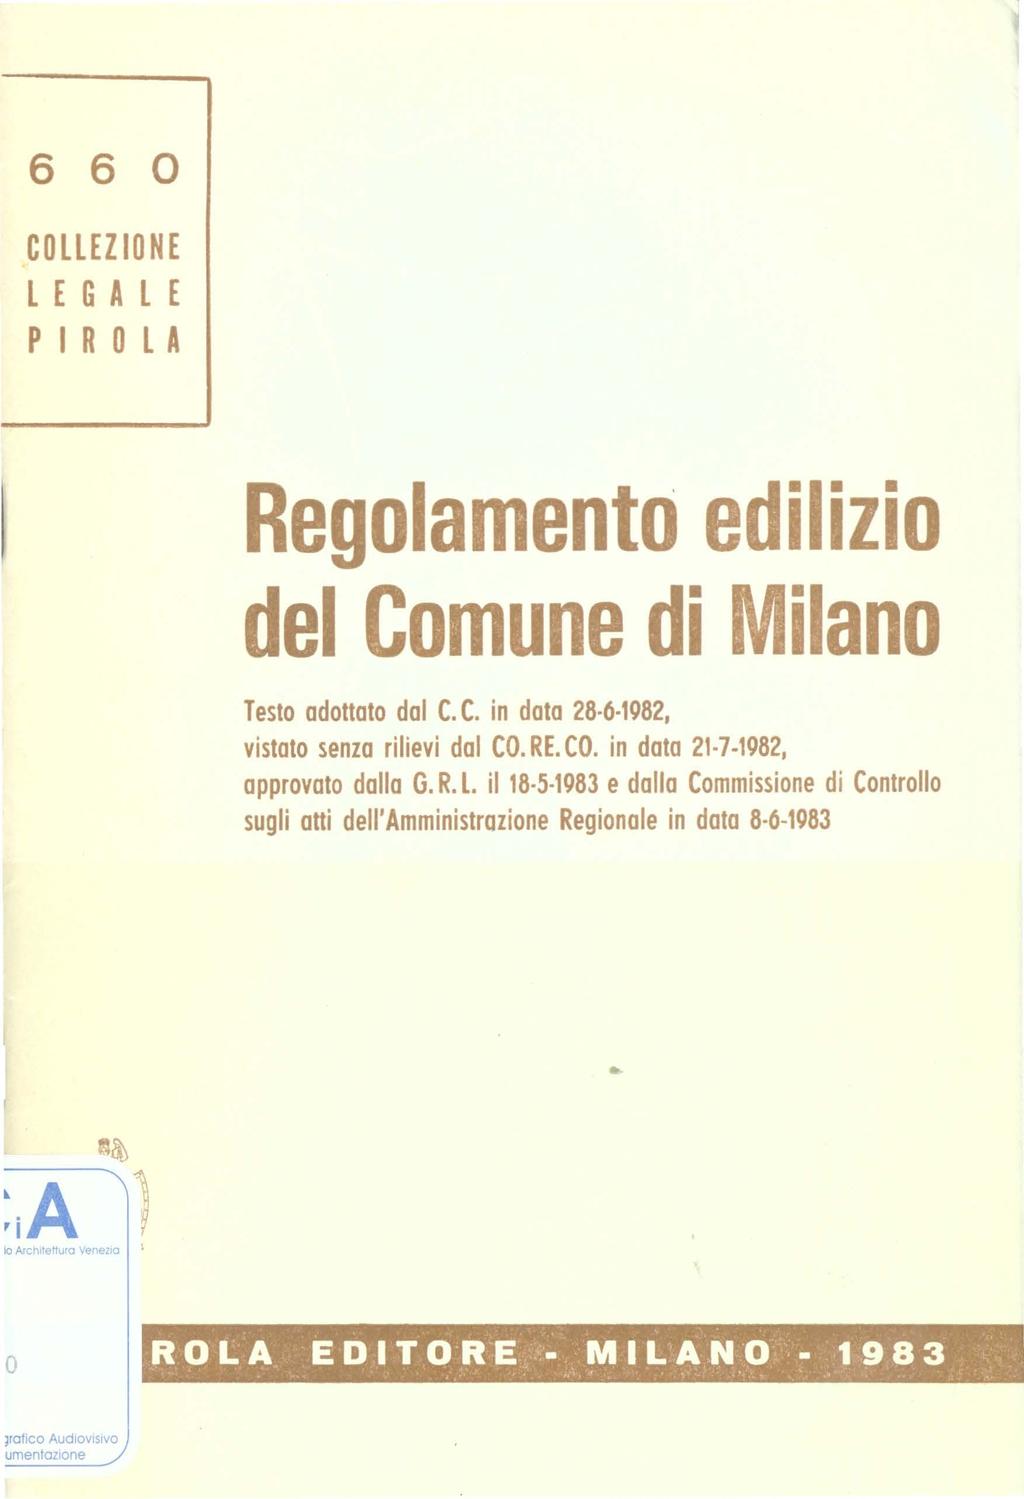 ' 6 6 COLLEZIONE LEGALE PIROLA Reglament edilizi del Cmune di Milan Test adttat dal C. C. in data 28 6 1982, vistat senza rilievi dal CO. RE. CO. in data 21-7-1982, apprvat dalla G. R. L. il 18 5 1983 e dalla Cmmissine di Cntrll sugli atti dell'amministrazine Reginale in data 8 6-1983 i Architettura Venezia I ROLA EDITORE.